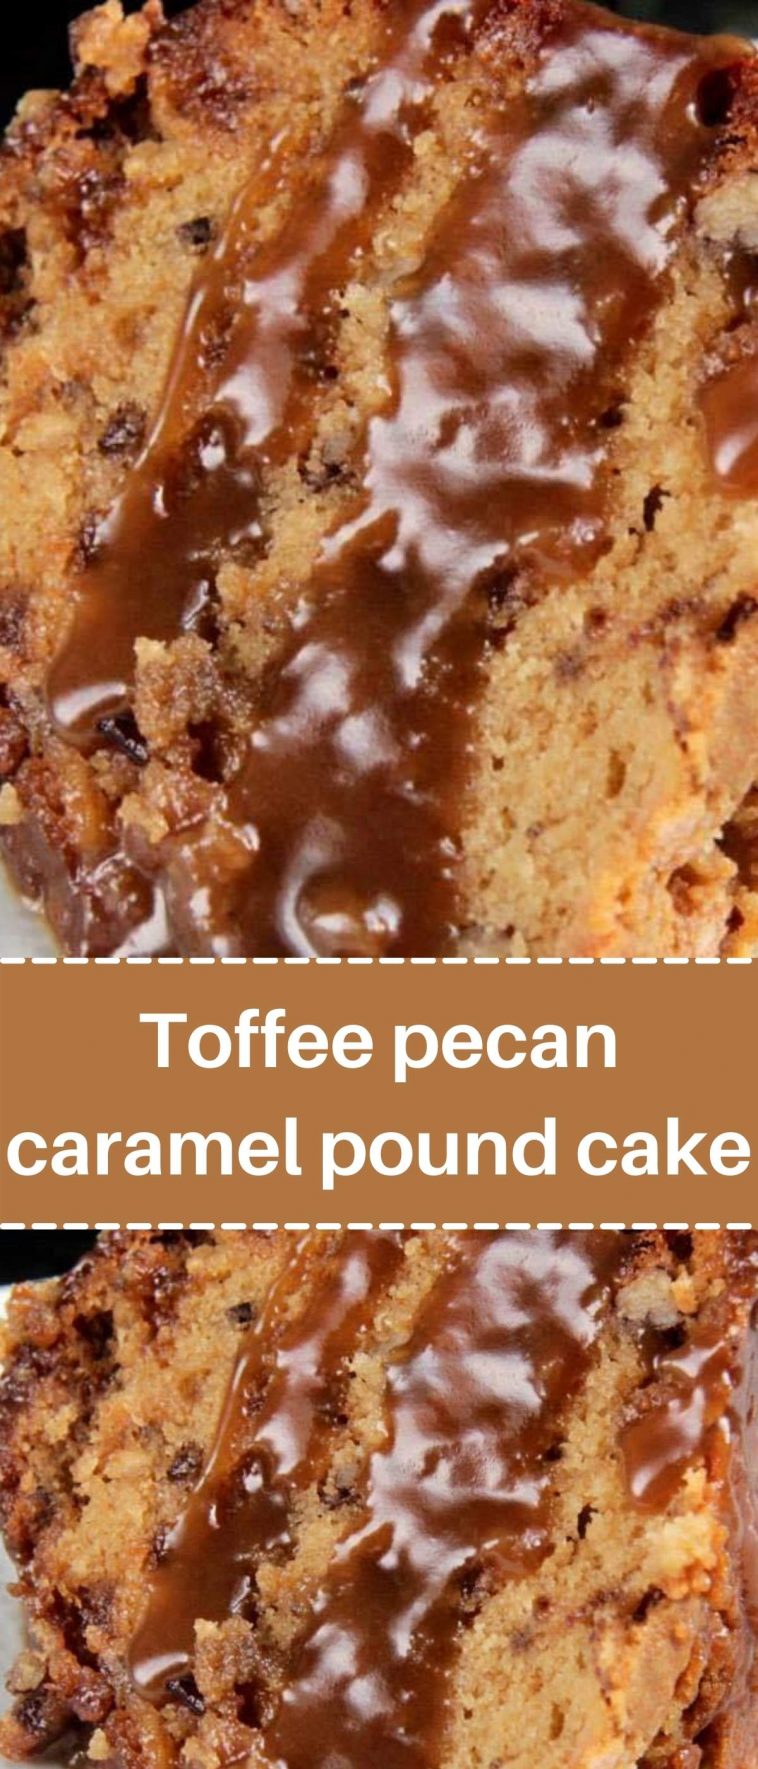 Toffee pecan caramel pound cake